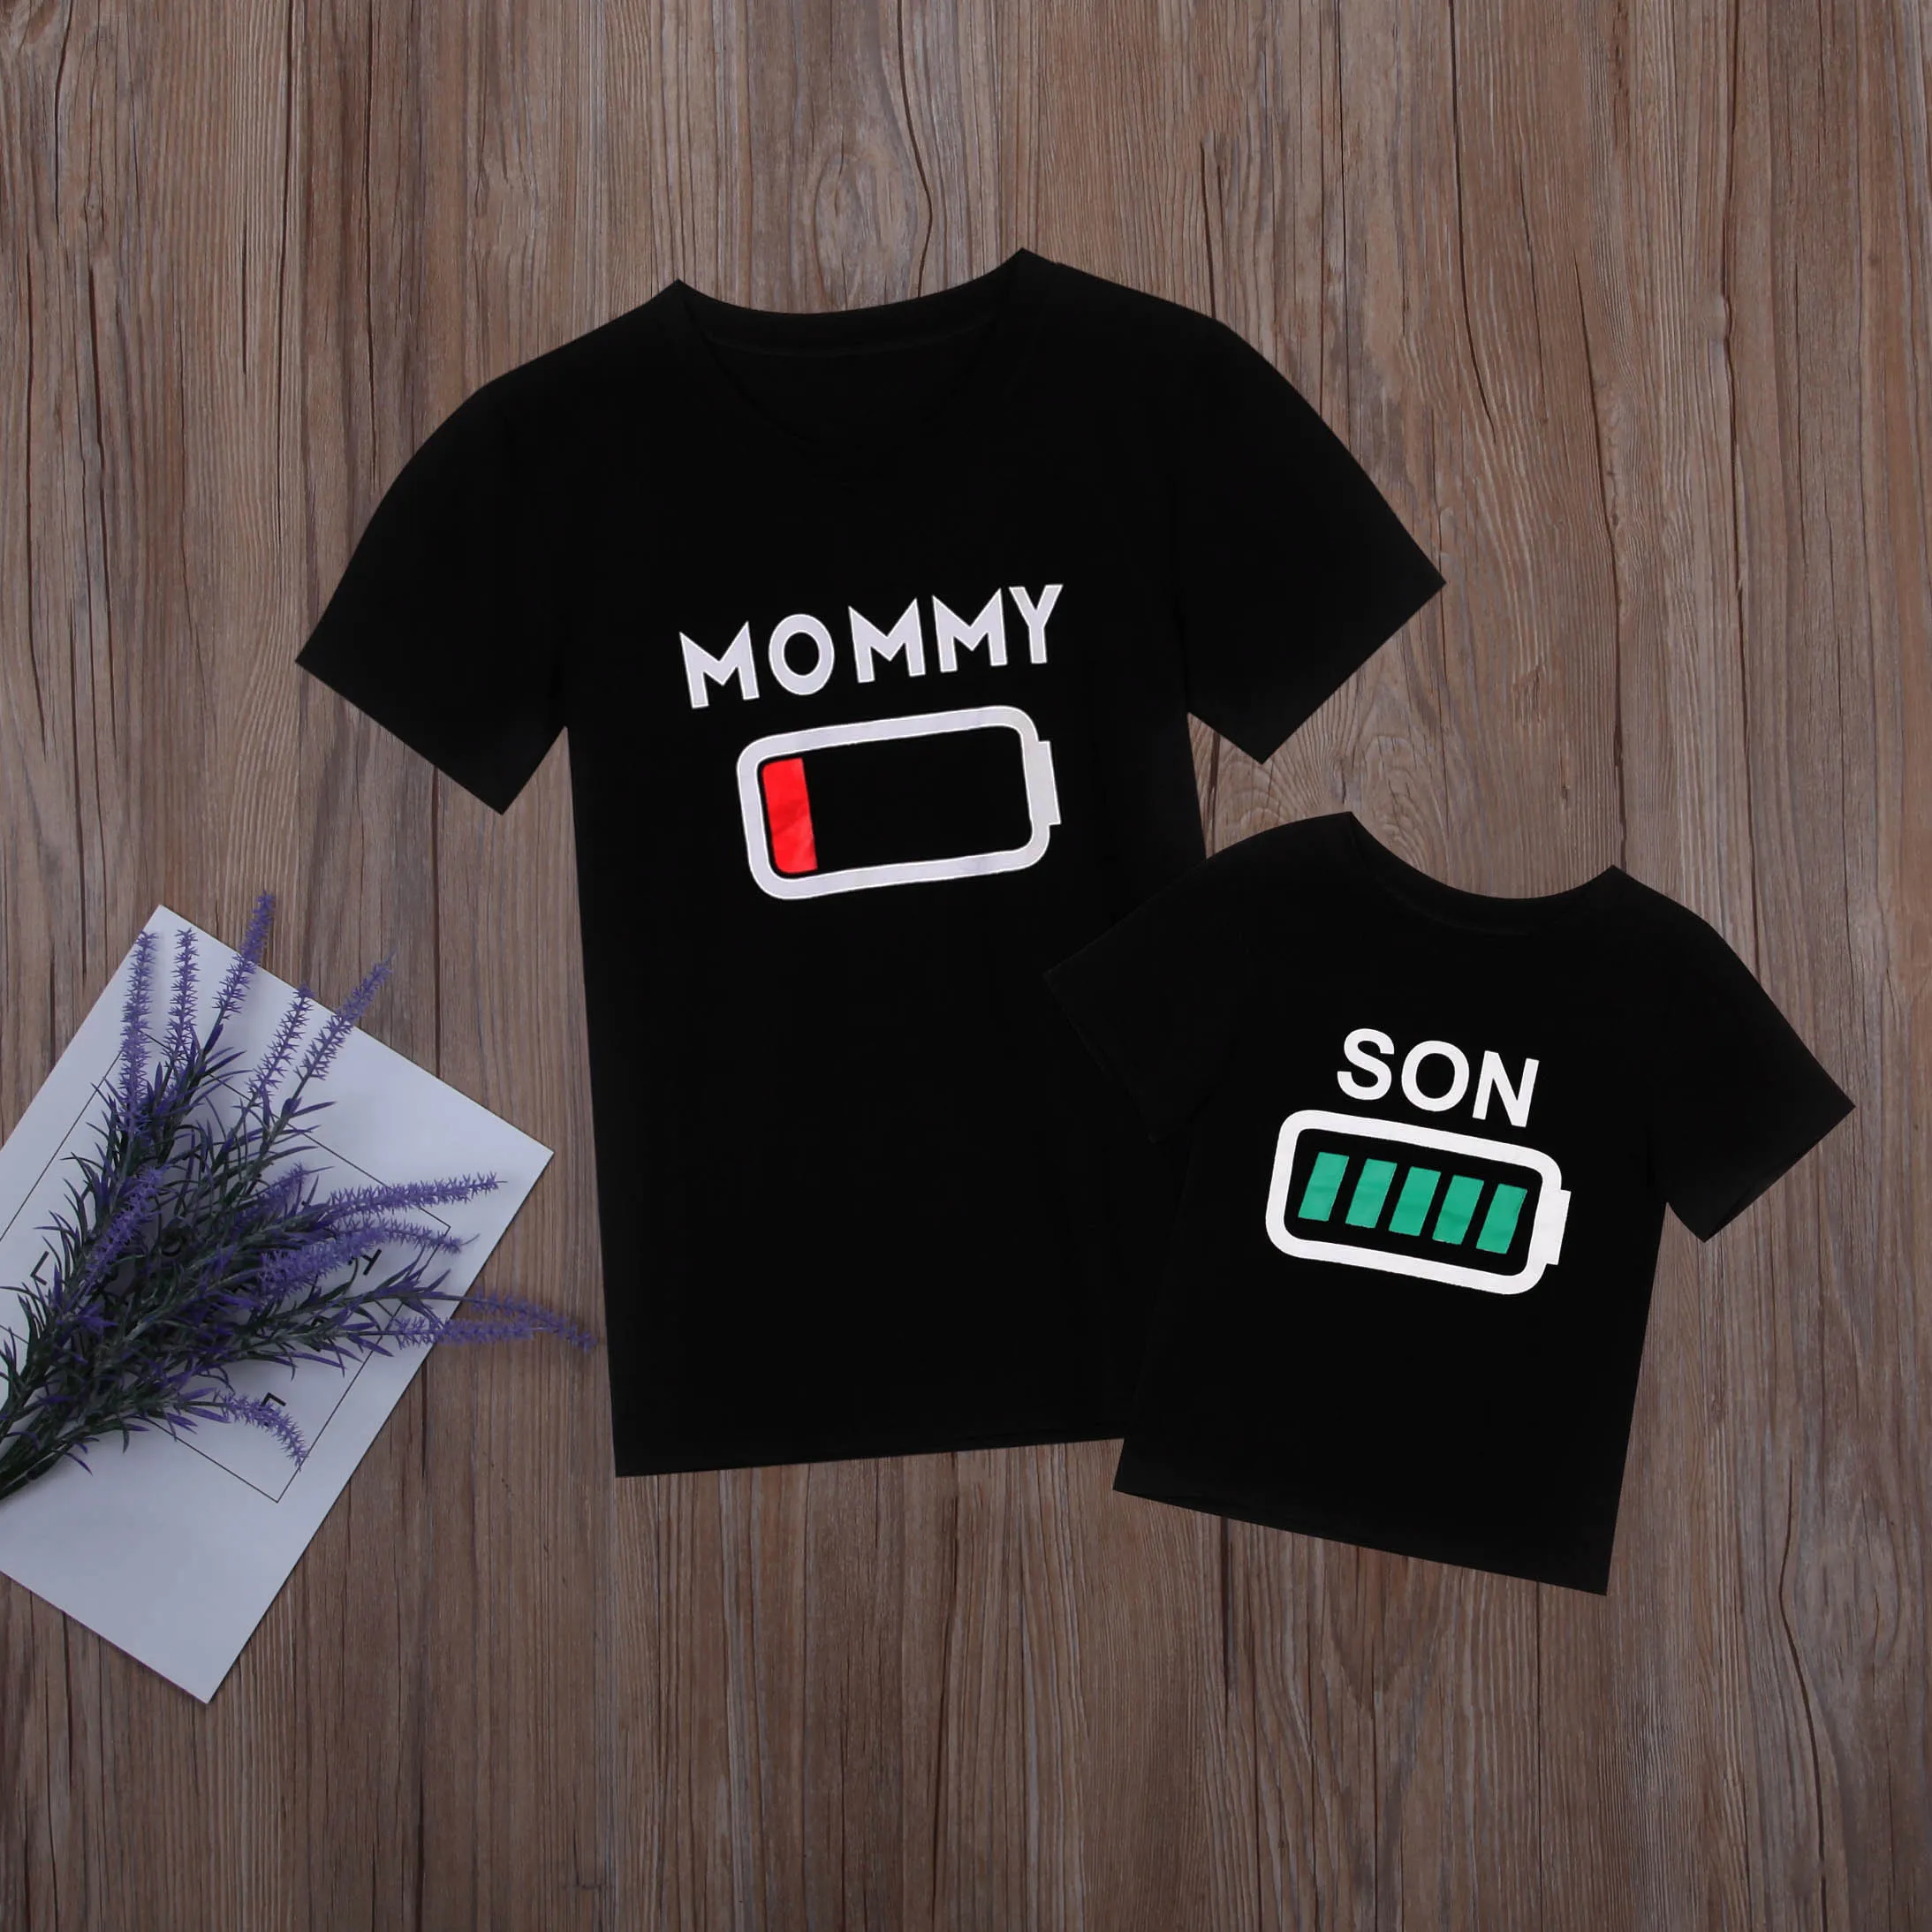 Одинаковые футболки для маленьких мальчиков и женщин; Футболка с принтом батареи; повседневная одежда; одежда для мамы и сына; футболки с принтом